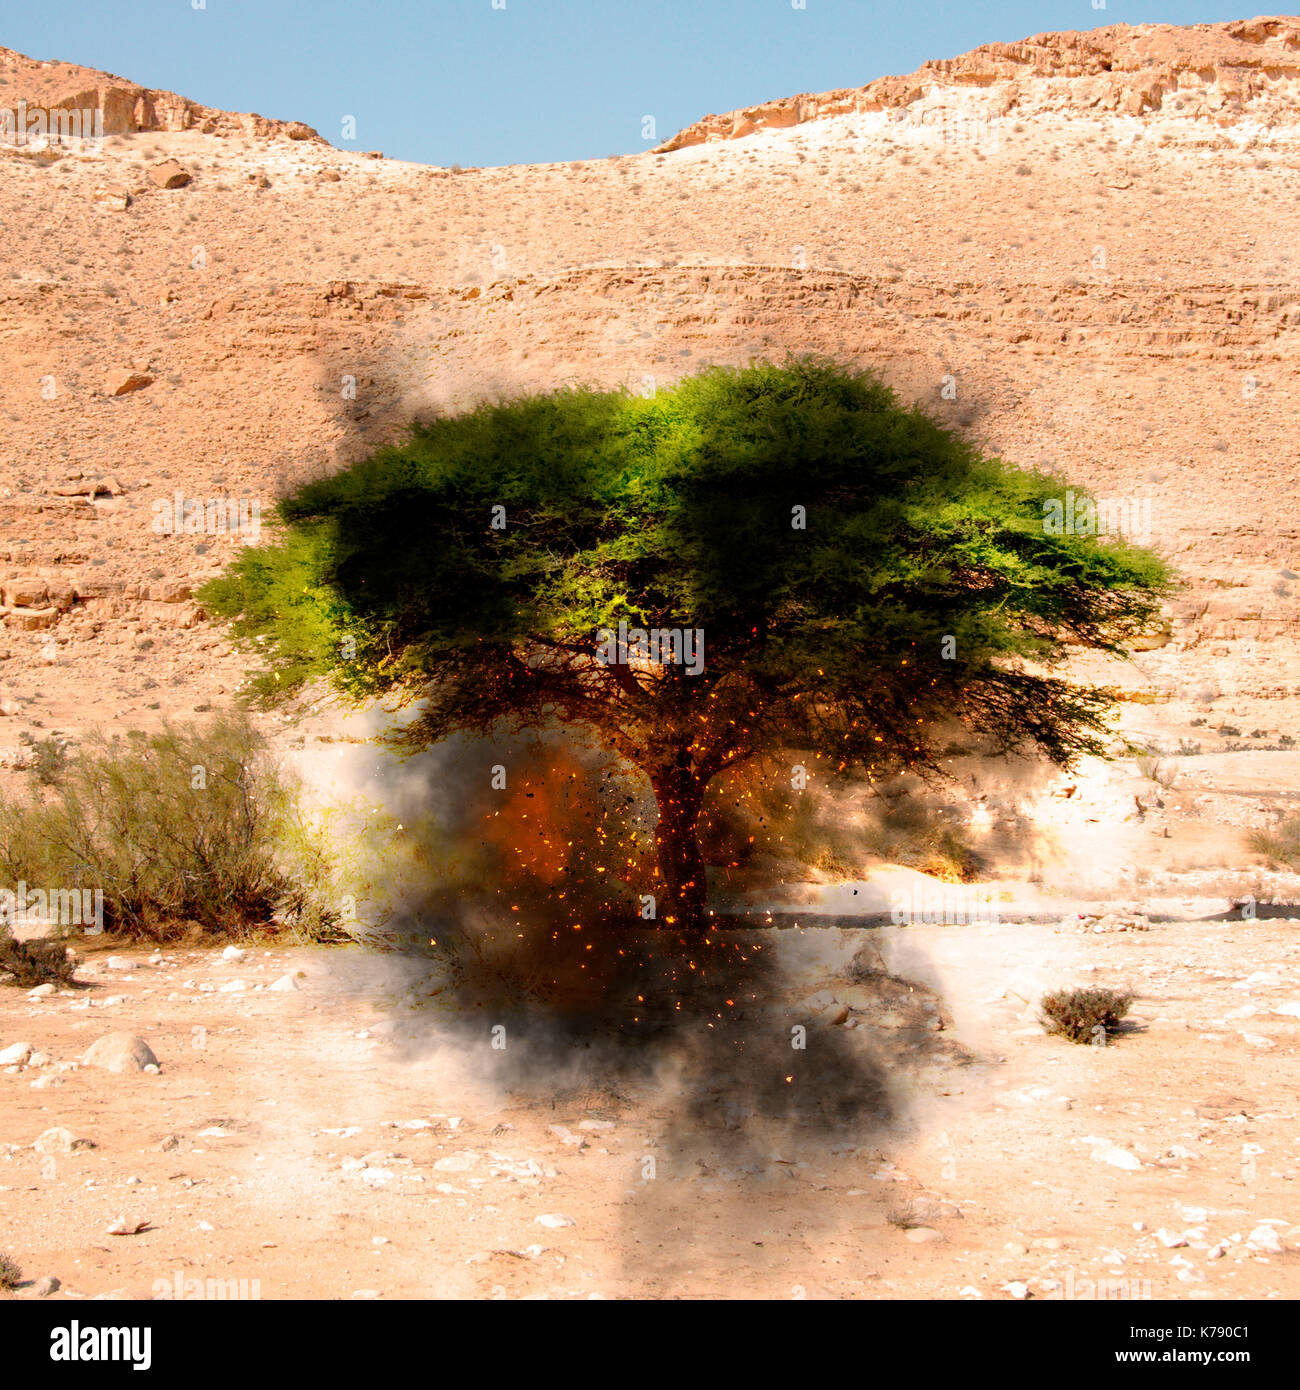 Amélioration de l'image numérique d'un buisson ardent de la Bible (livre de l'exode [3:1-4, 17]) dans le désert Banque D'Images